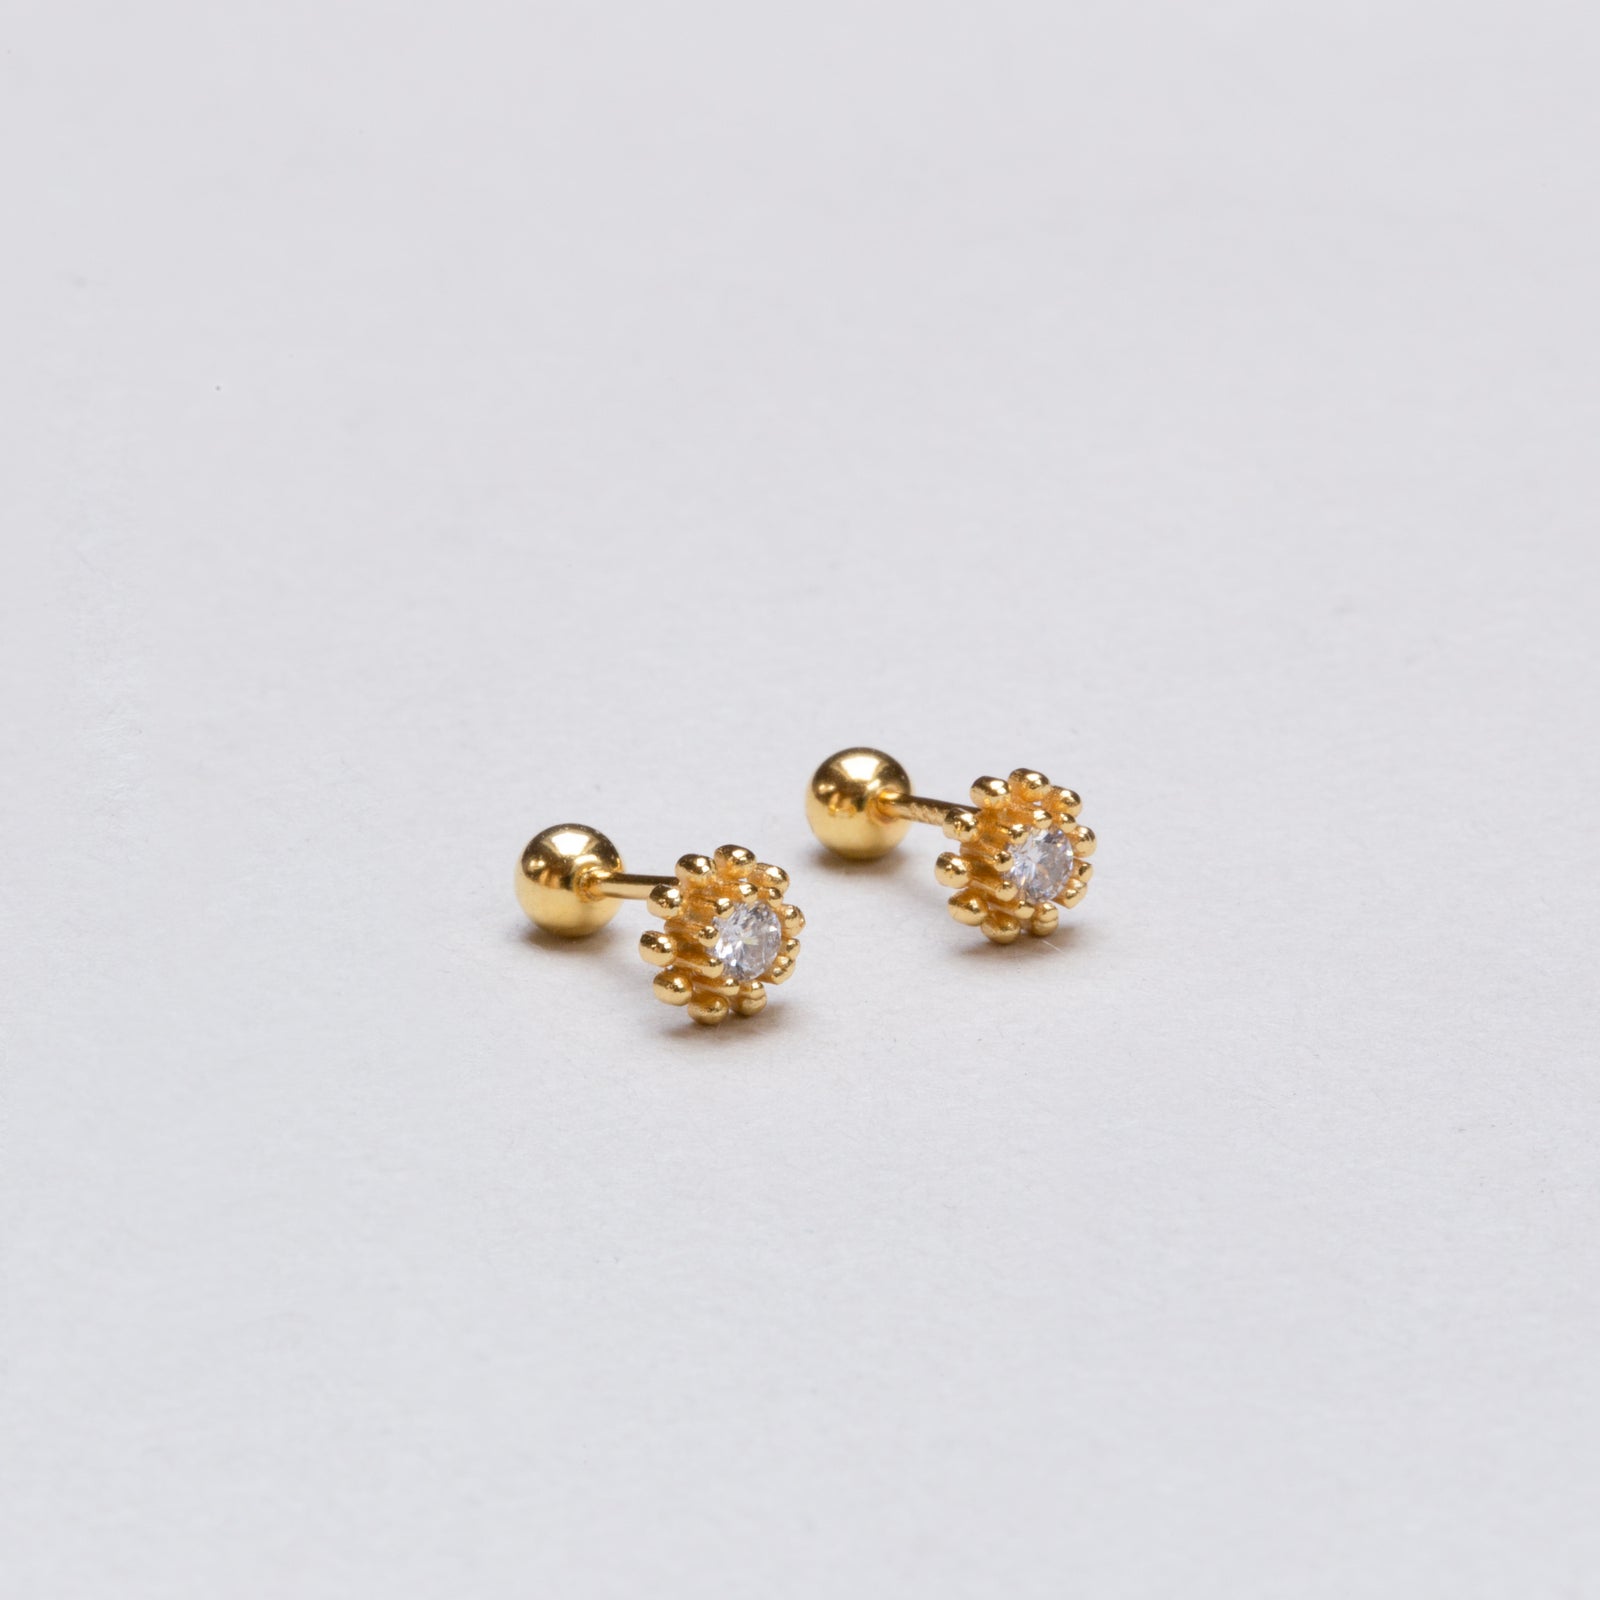  Barzel 18K Gold & Silver Tone Crystal Flower Earrings